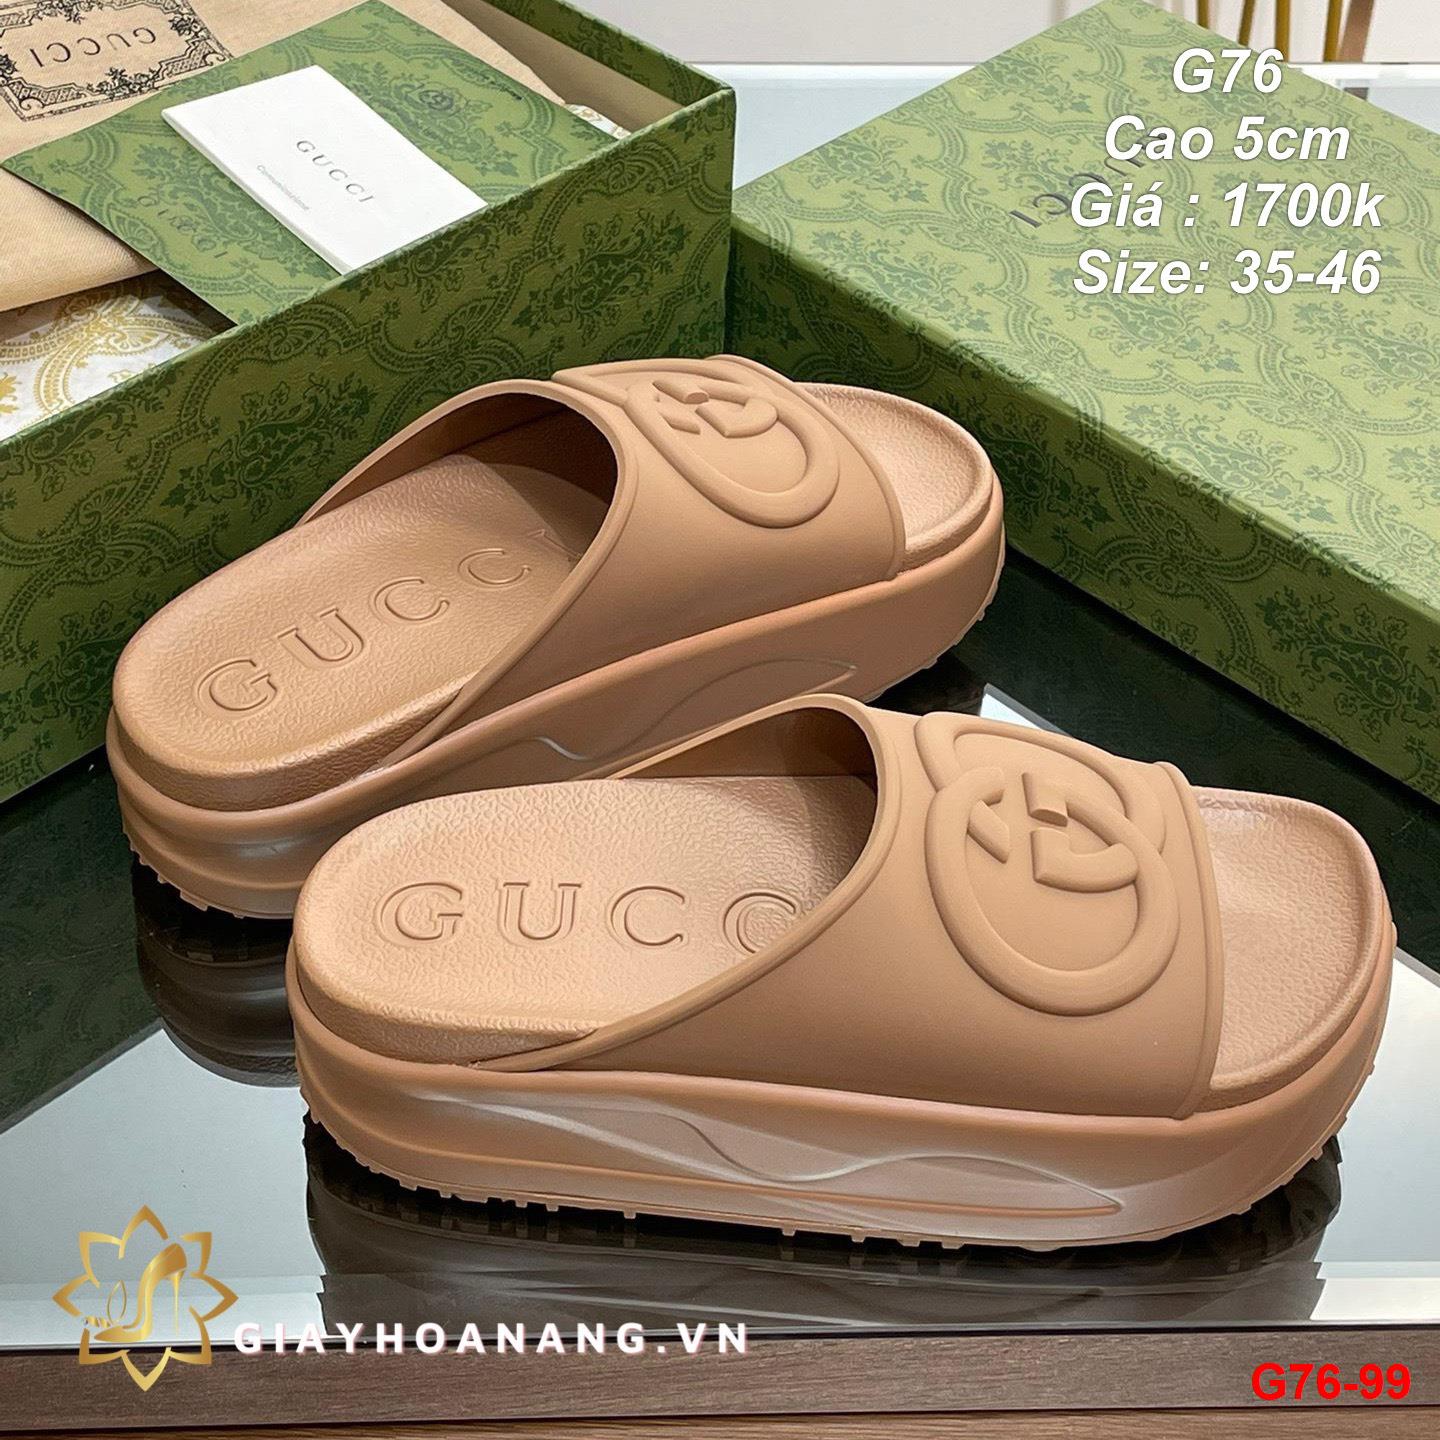 G76-99 Gucci dép cao 5cm siêu cấp